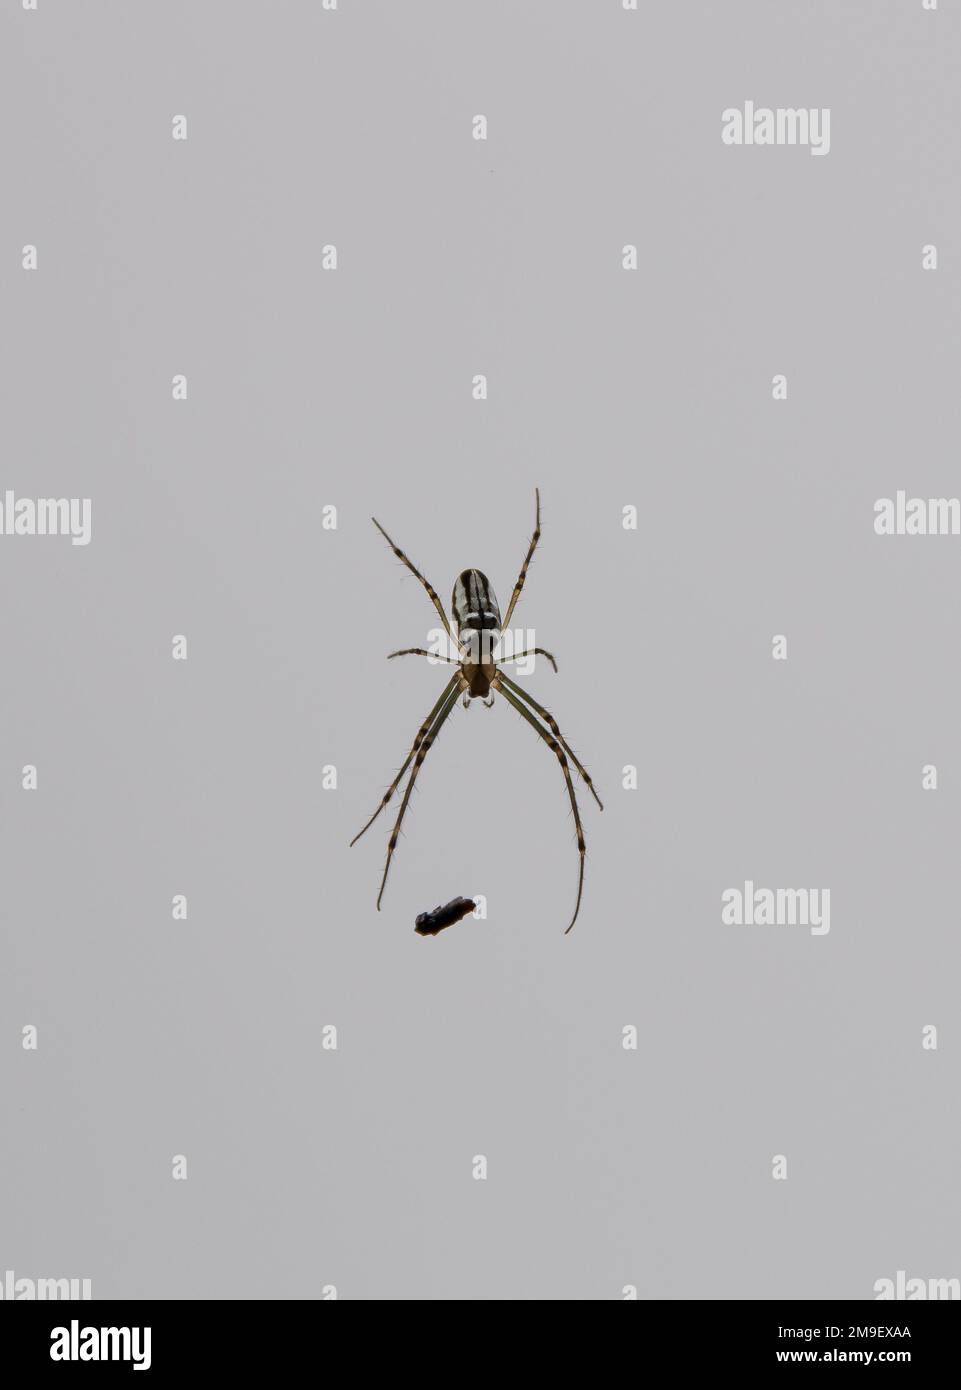 Australian Silver Orb Spider, Leucauge granulata, vista dall'alto su una superficie leggera. Corpo ovale lucido e lunghe gambe verdastre. Granulata di Leucauge Foto Stock